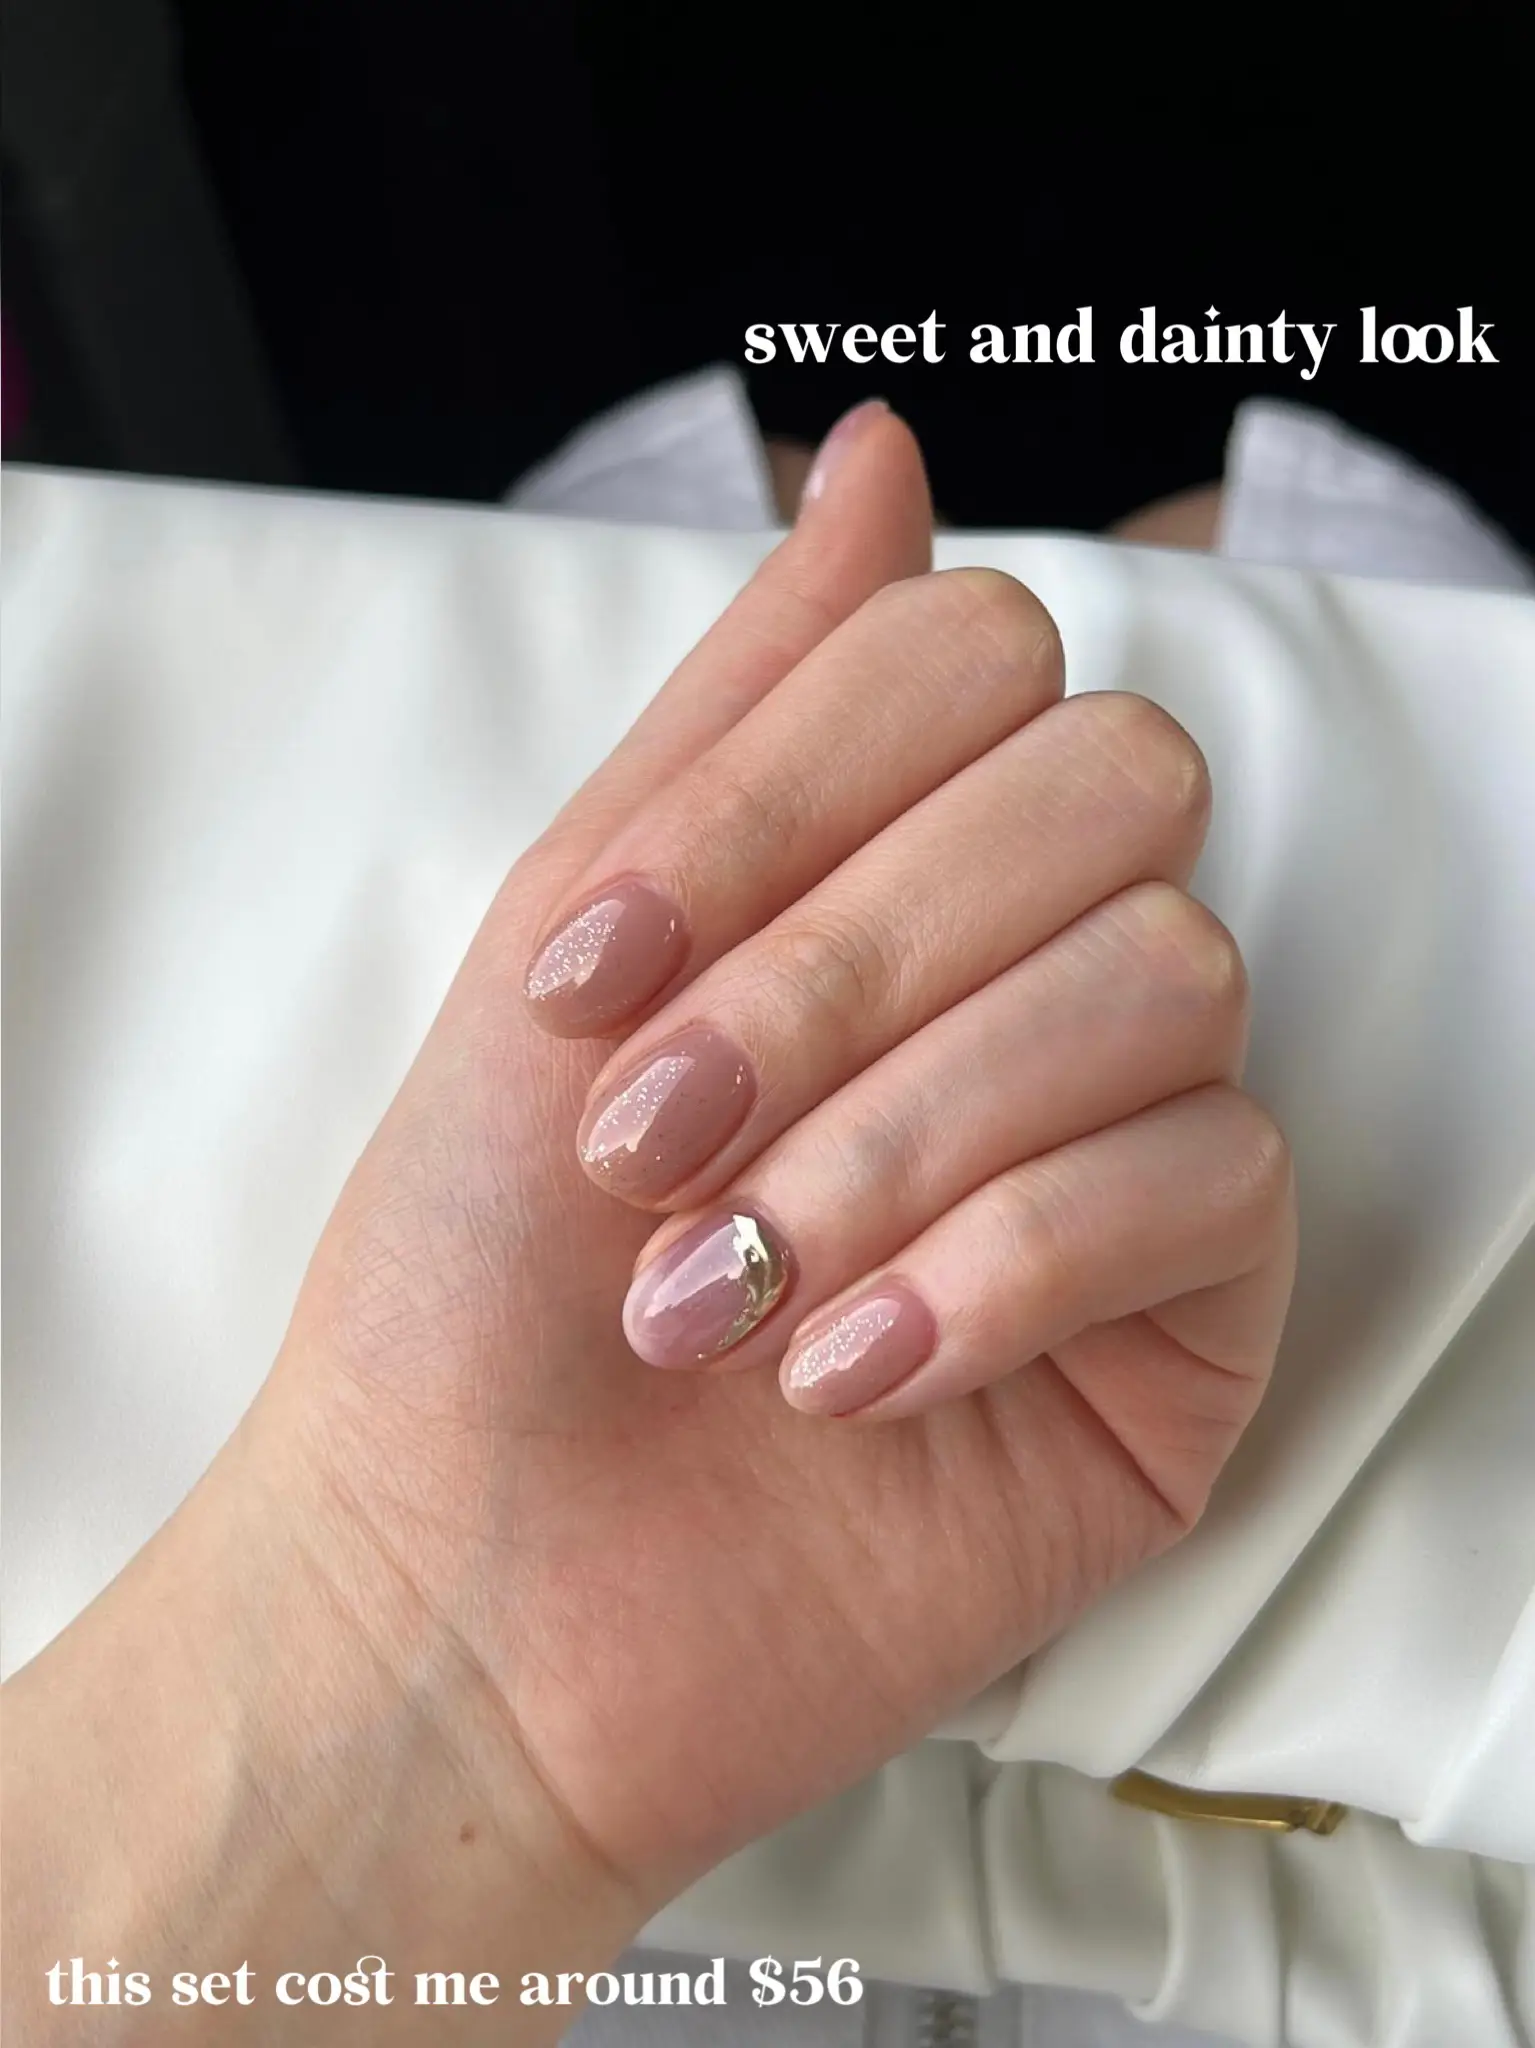 Thiết kế móng tay đầy sáng tạo với Pink and gold foil nail. Đây là một sự kết hợp tuyệt vời giữa màu hồng nhẹ và màu vàng sang trọng, tạo nên một diện mạo rực rỡ cho tay của bạn. Hãy xem hình ảnh đẹp mắt này ngay!